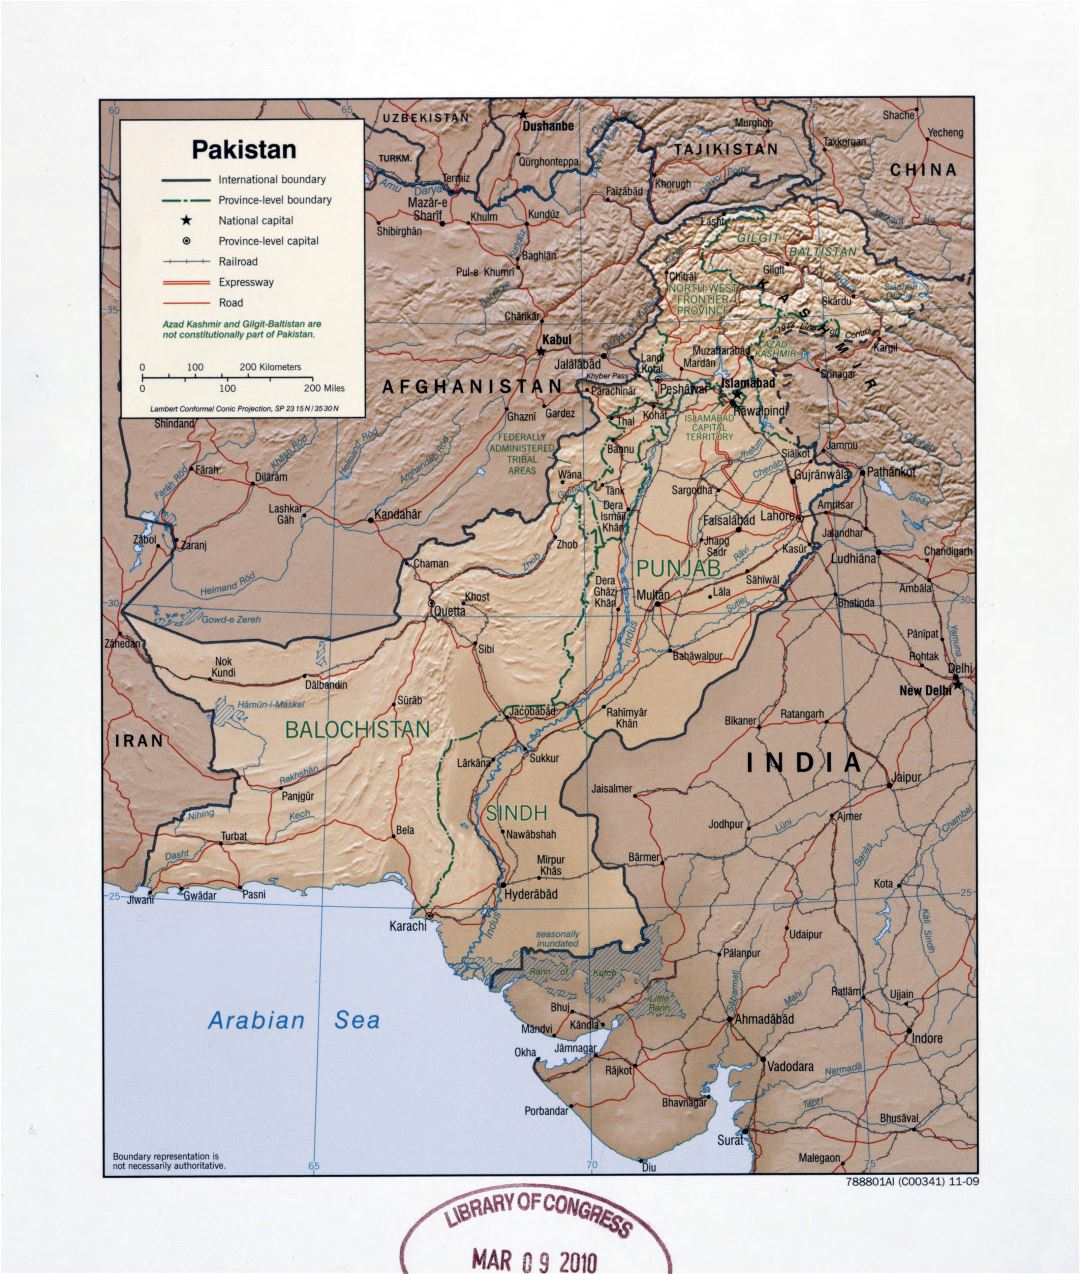 Grande detallado mapa político y administrativo de Pakistán con relieve, carreteras, ferrocarriles y principales ciudades - 2009